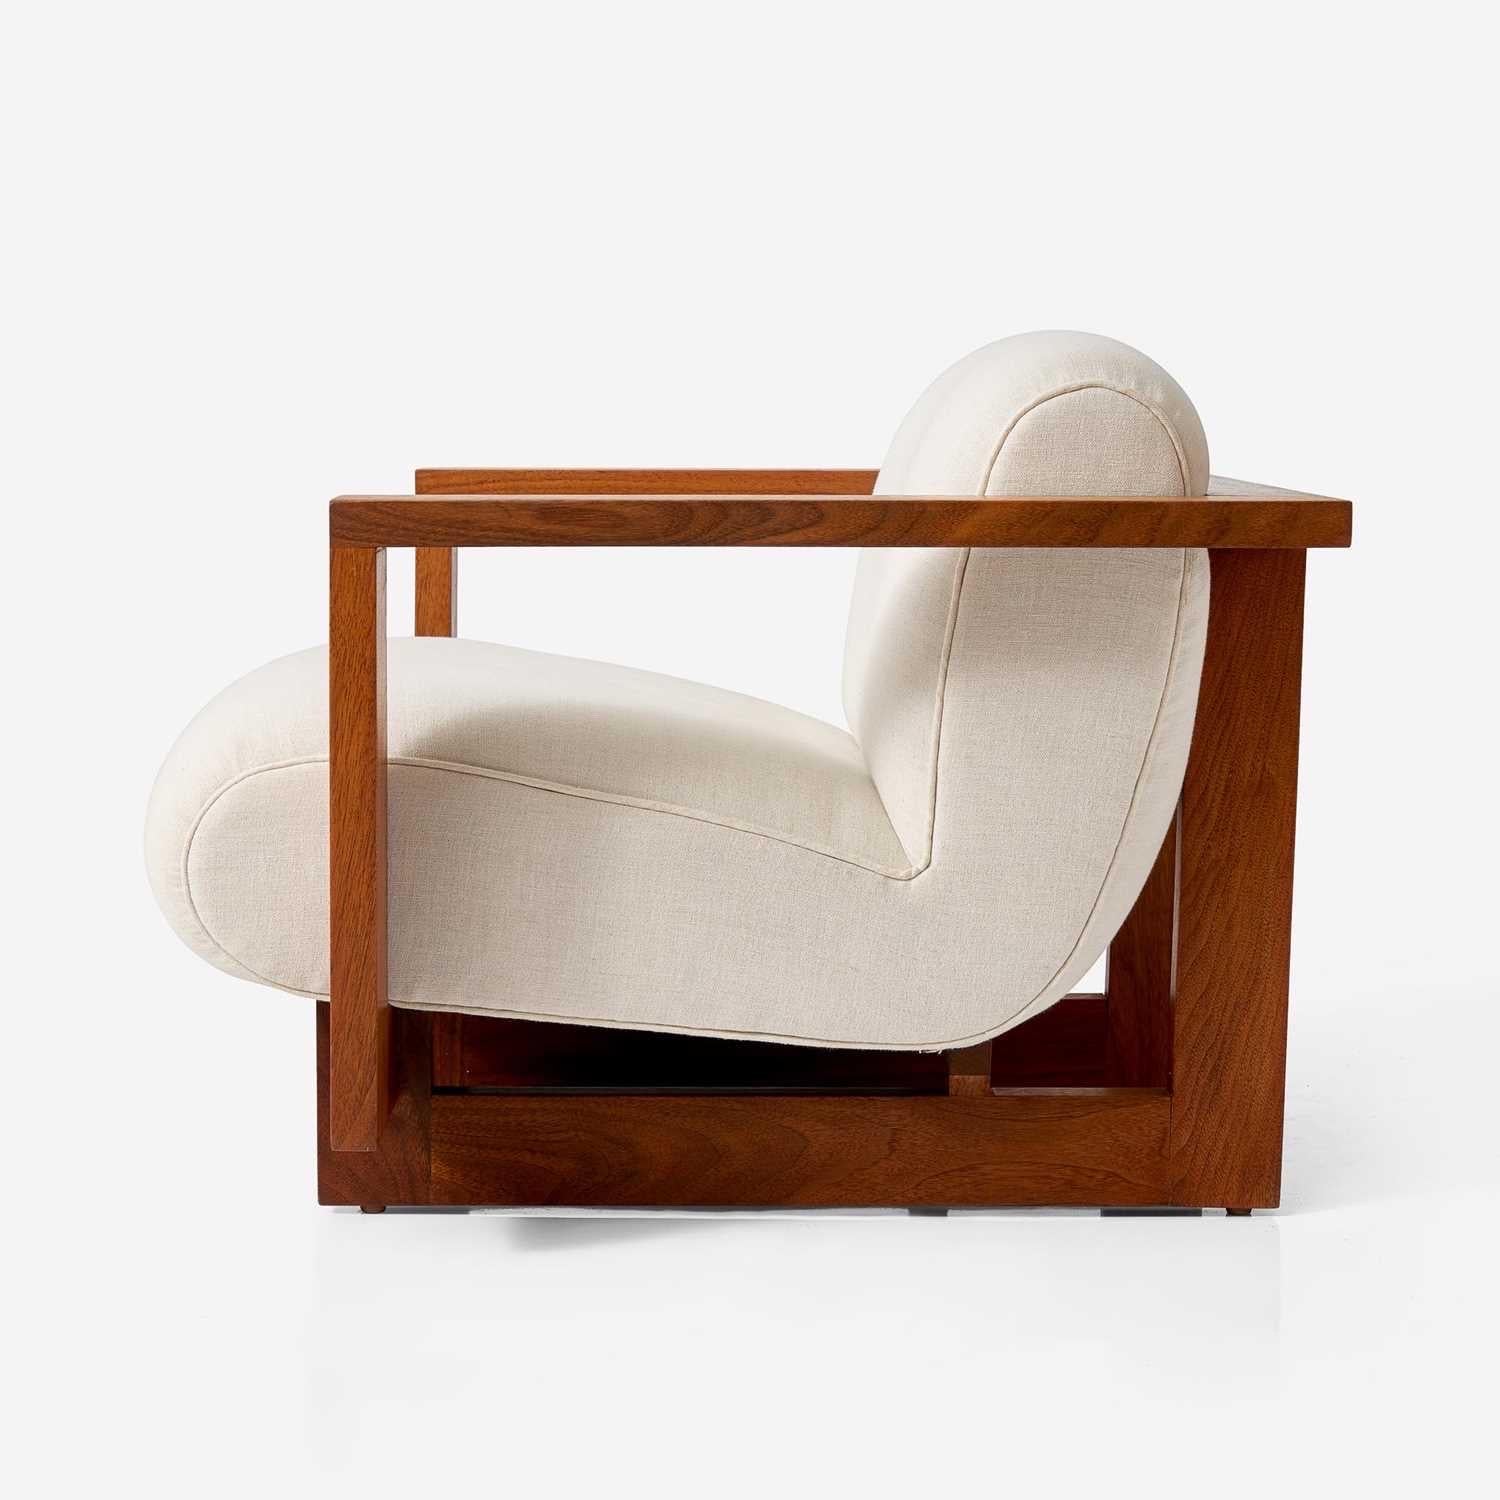 Un magnifique fauteuil club cubiste pour enfant qui a été commandé par Angelina Jolie comme cadeau pour ses enfants, reflétant l'intérêt de Brad Pitt pour le design américain contemporain. Sophistiqué et ludique, il est construit en noyer et